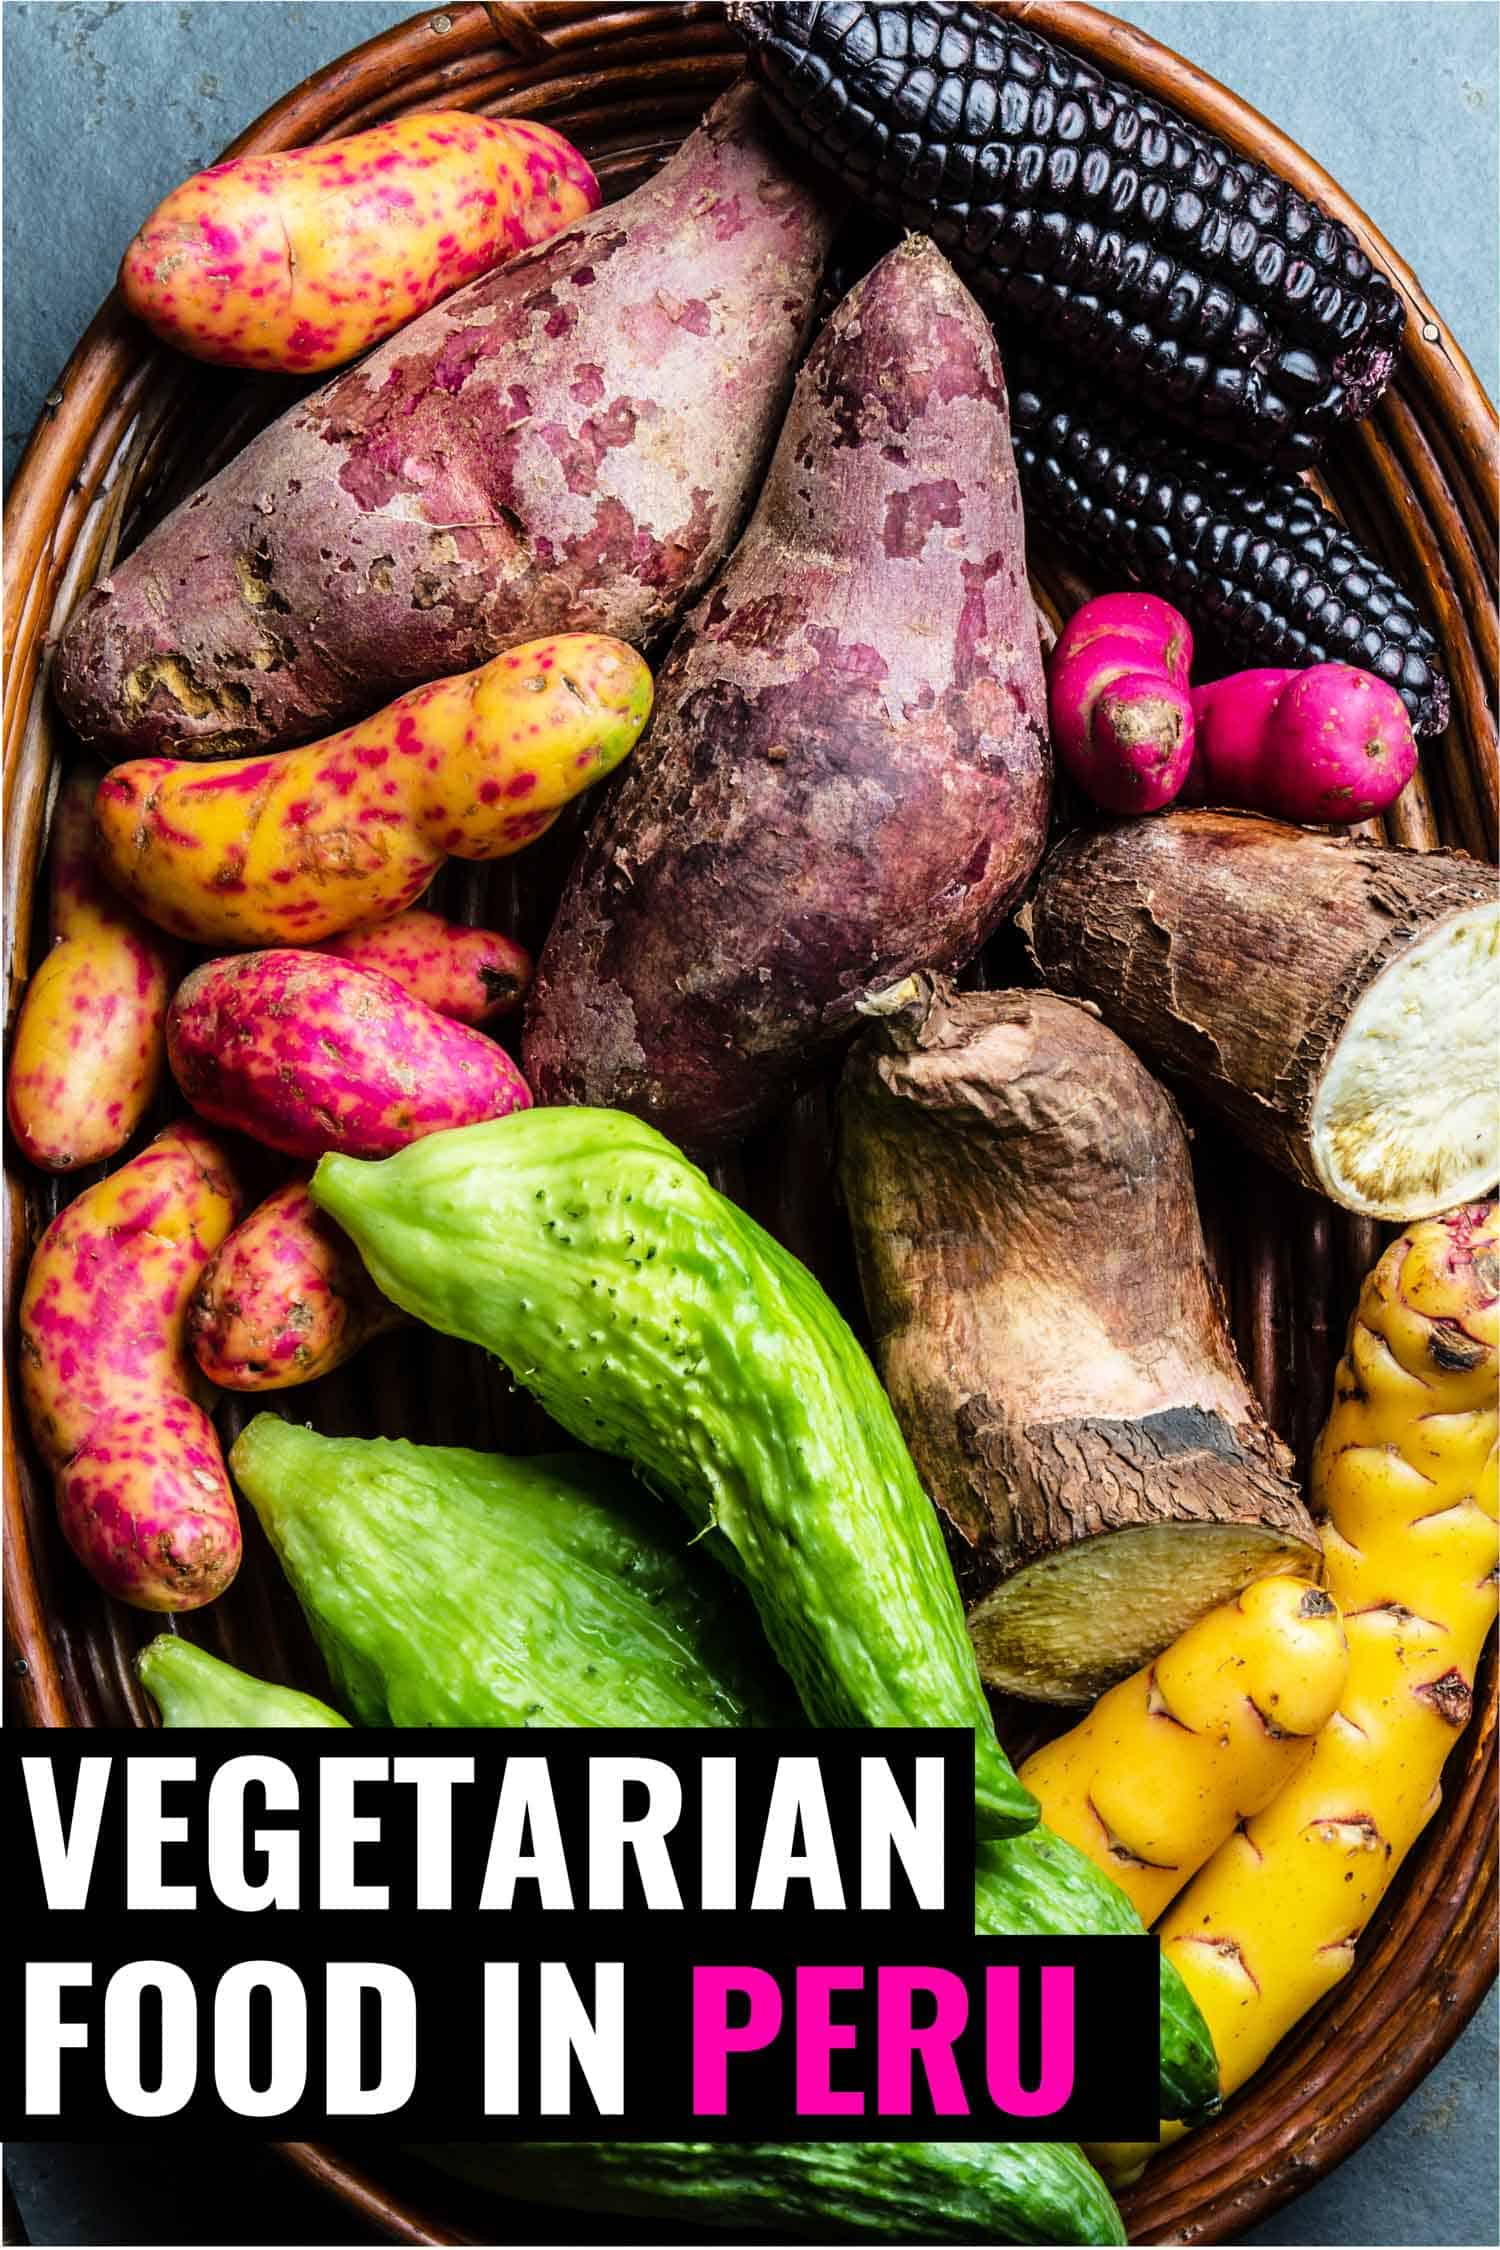 Basket of root vegetables in Peru